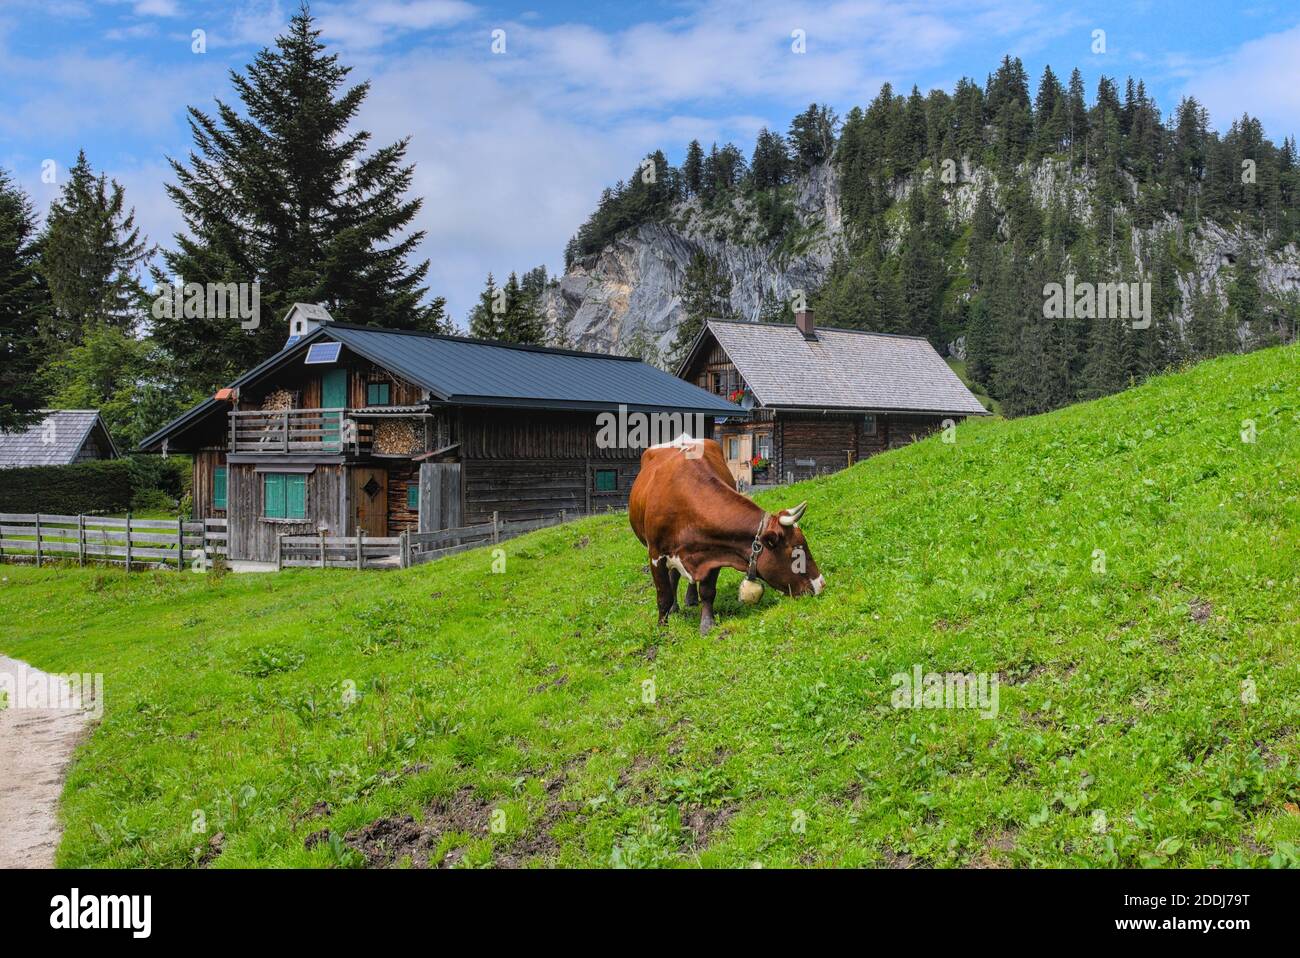 Gravende Kuh neben Hütten auf einer Alm Foto Stock